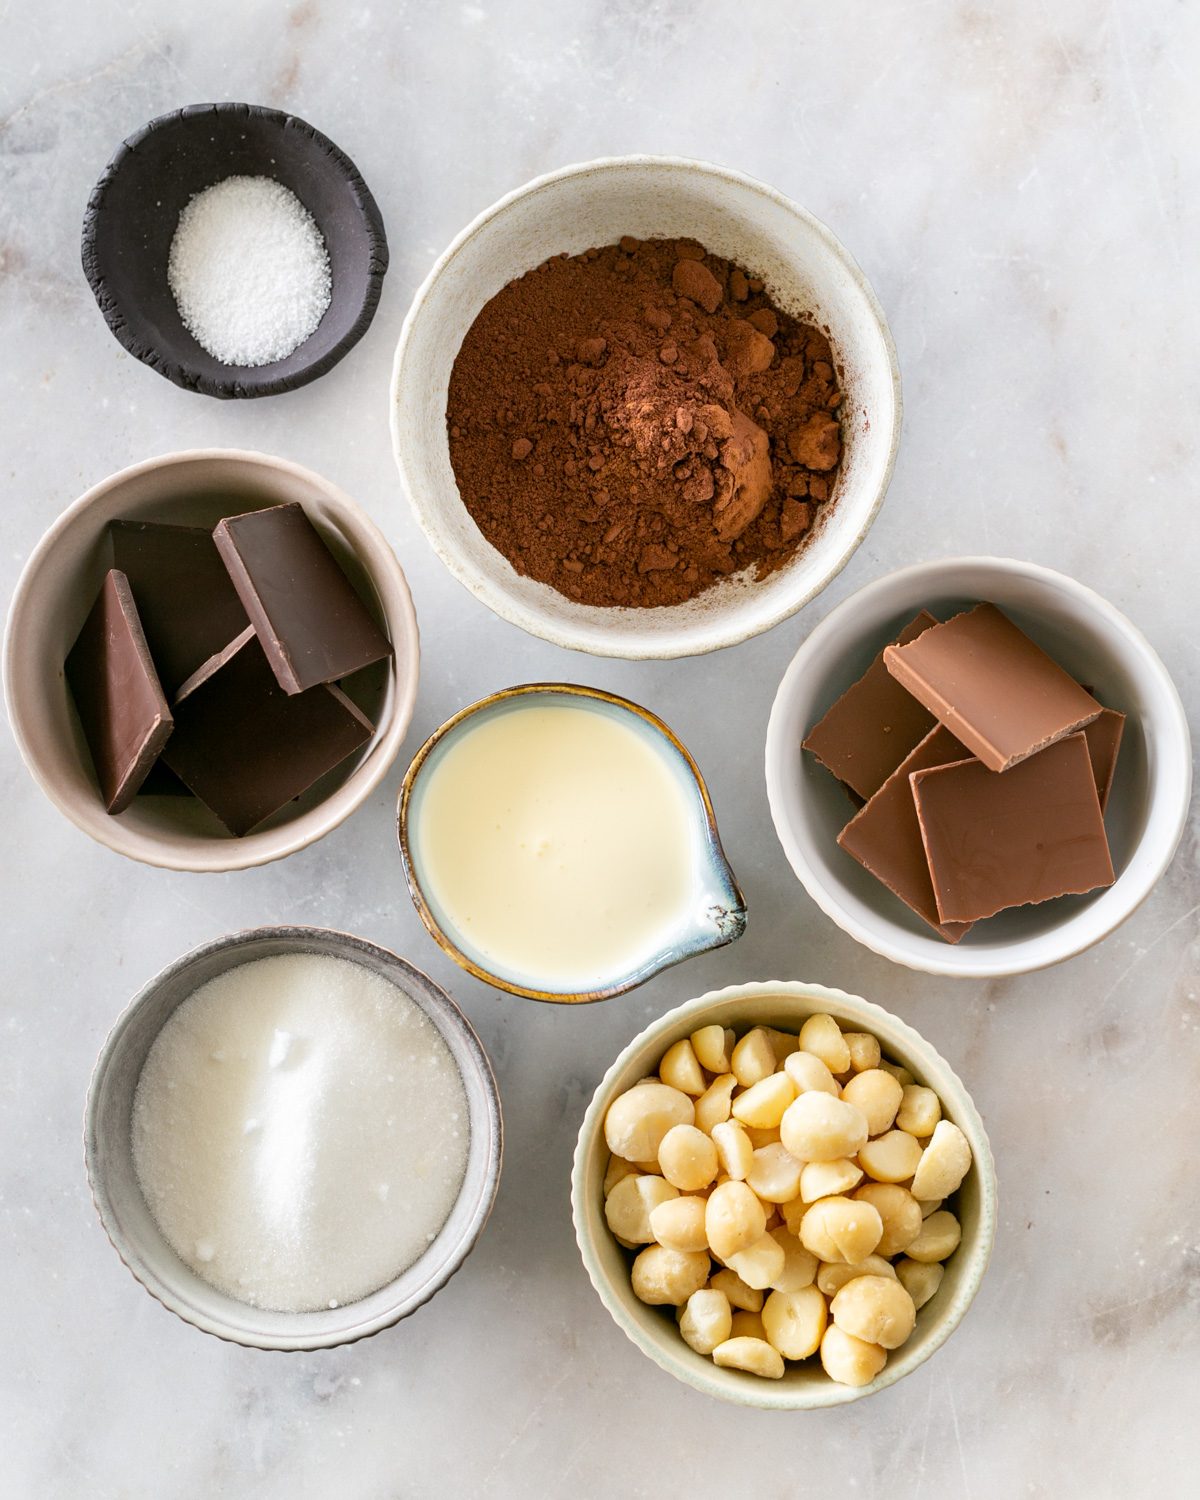 Ingredients to make Caramel Chocolate pralines